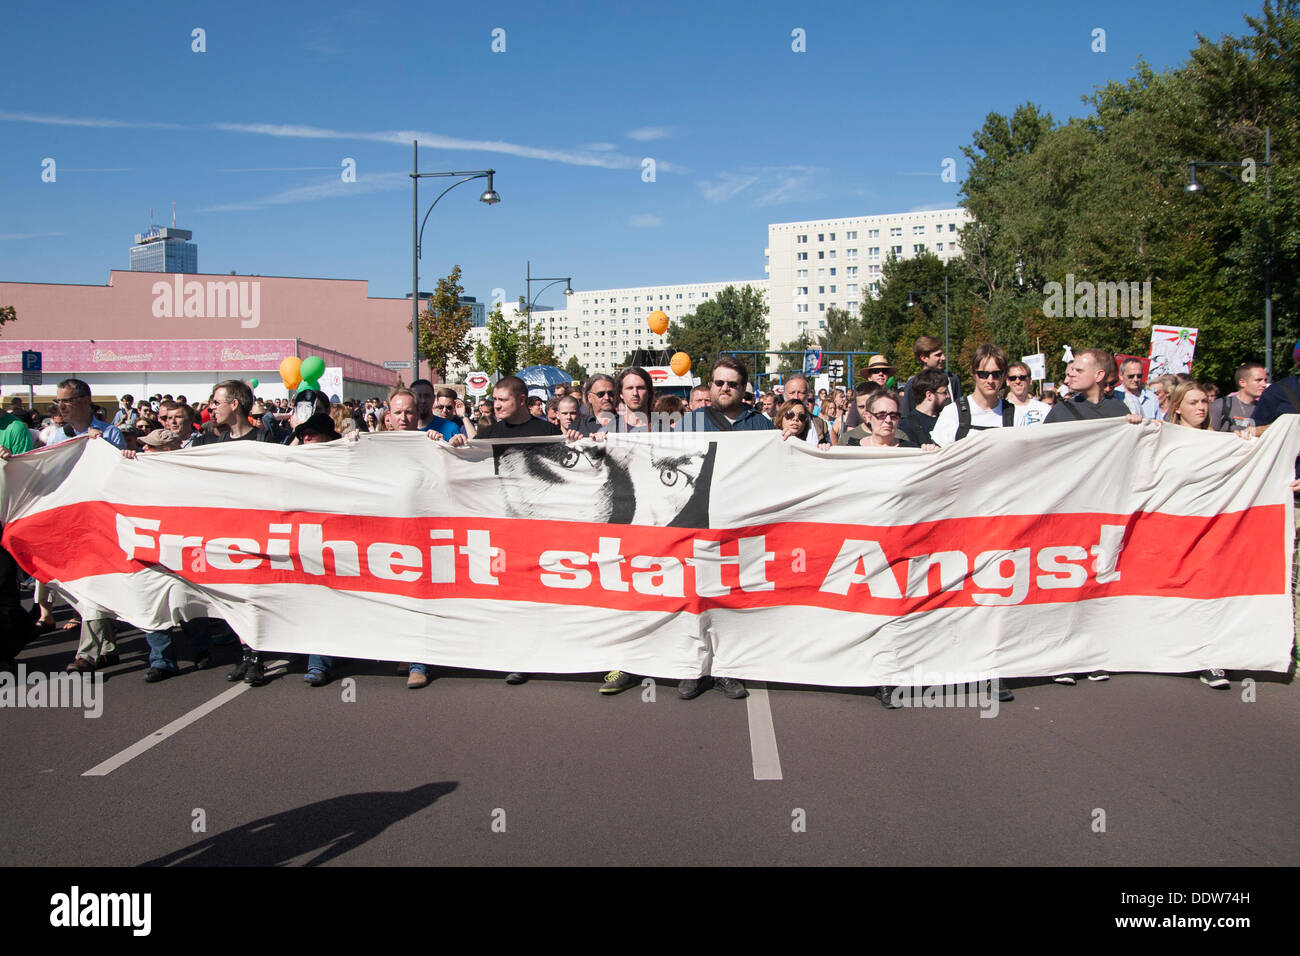 Berlín, Alemania. 07 Sep, 2013. Freiheit statt Angst 2013: manifestación anual contra la vigilancia en Berlín. Foto de stock